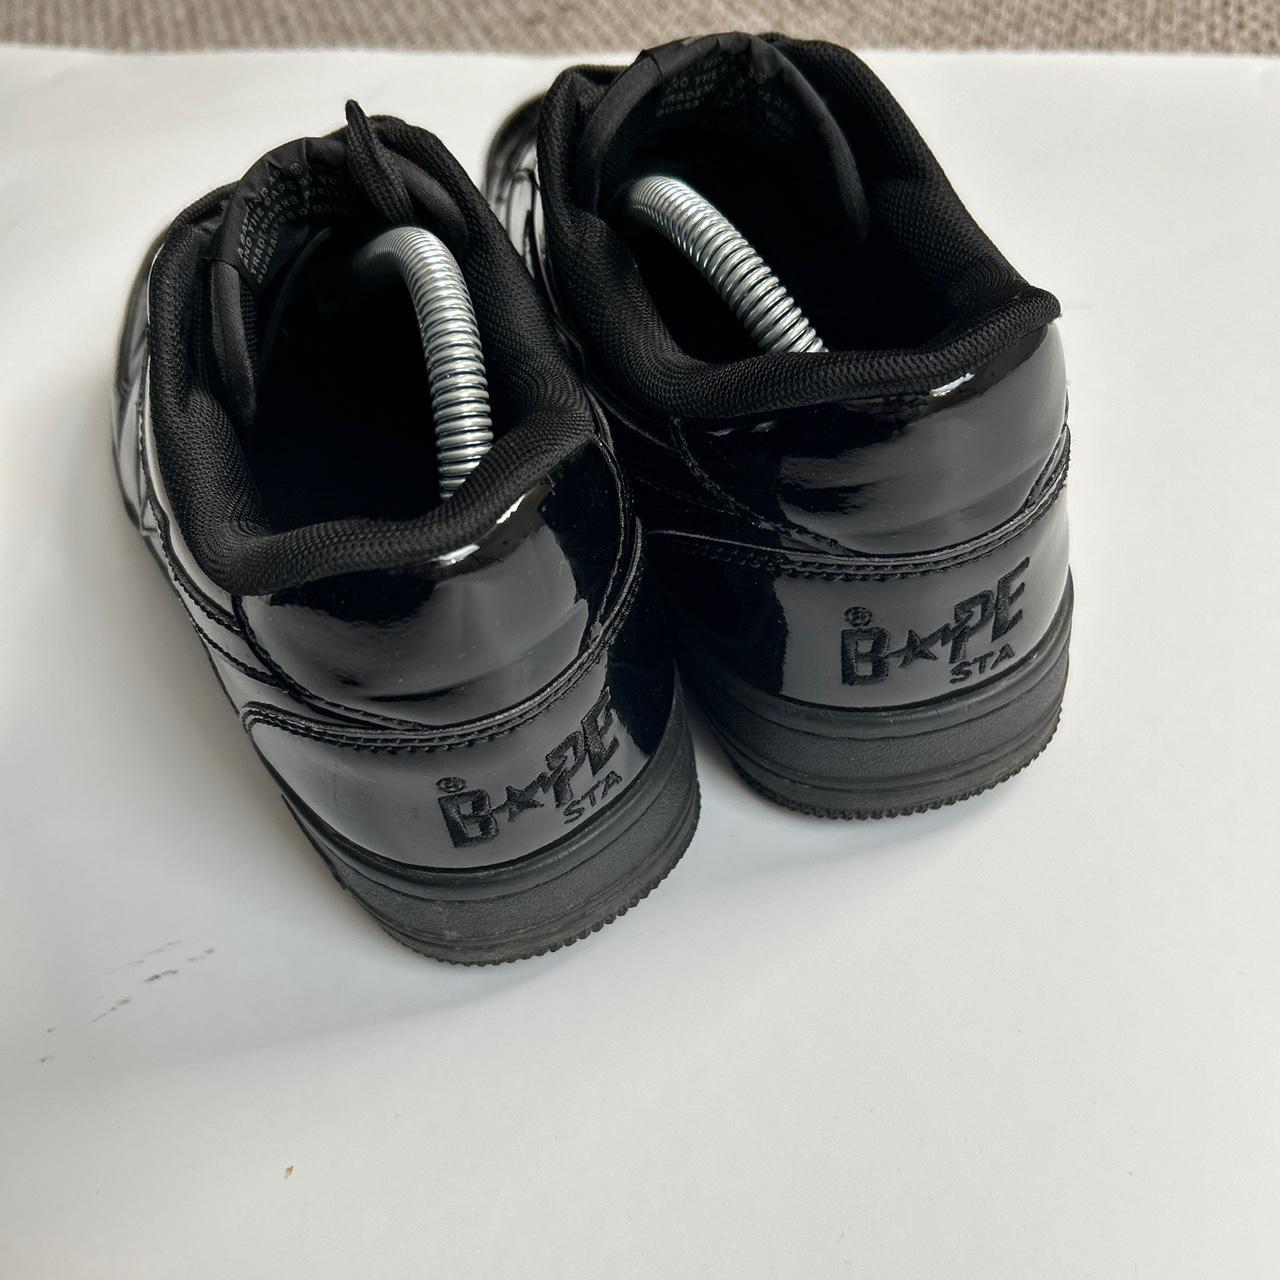 Bapesta Shoes (7)